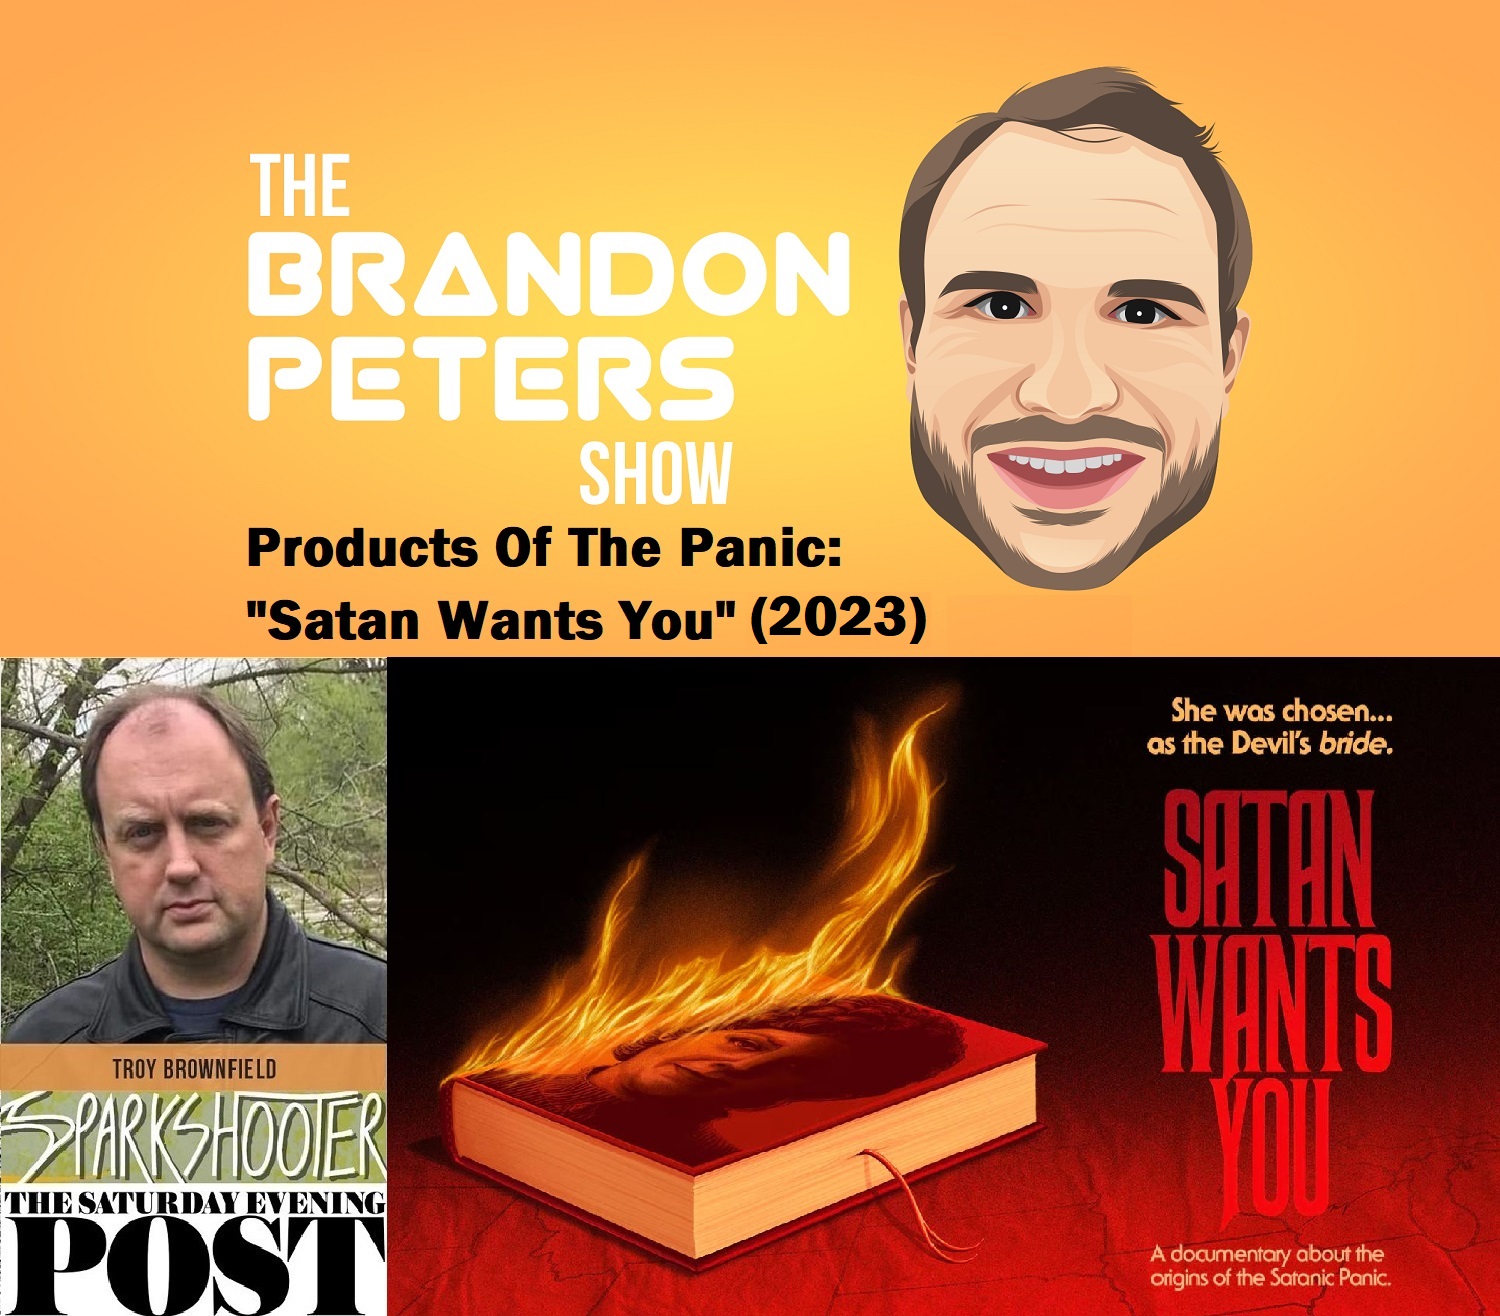 TBPS_Satan Wants You ART